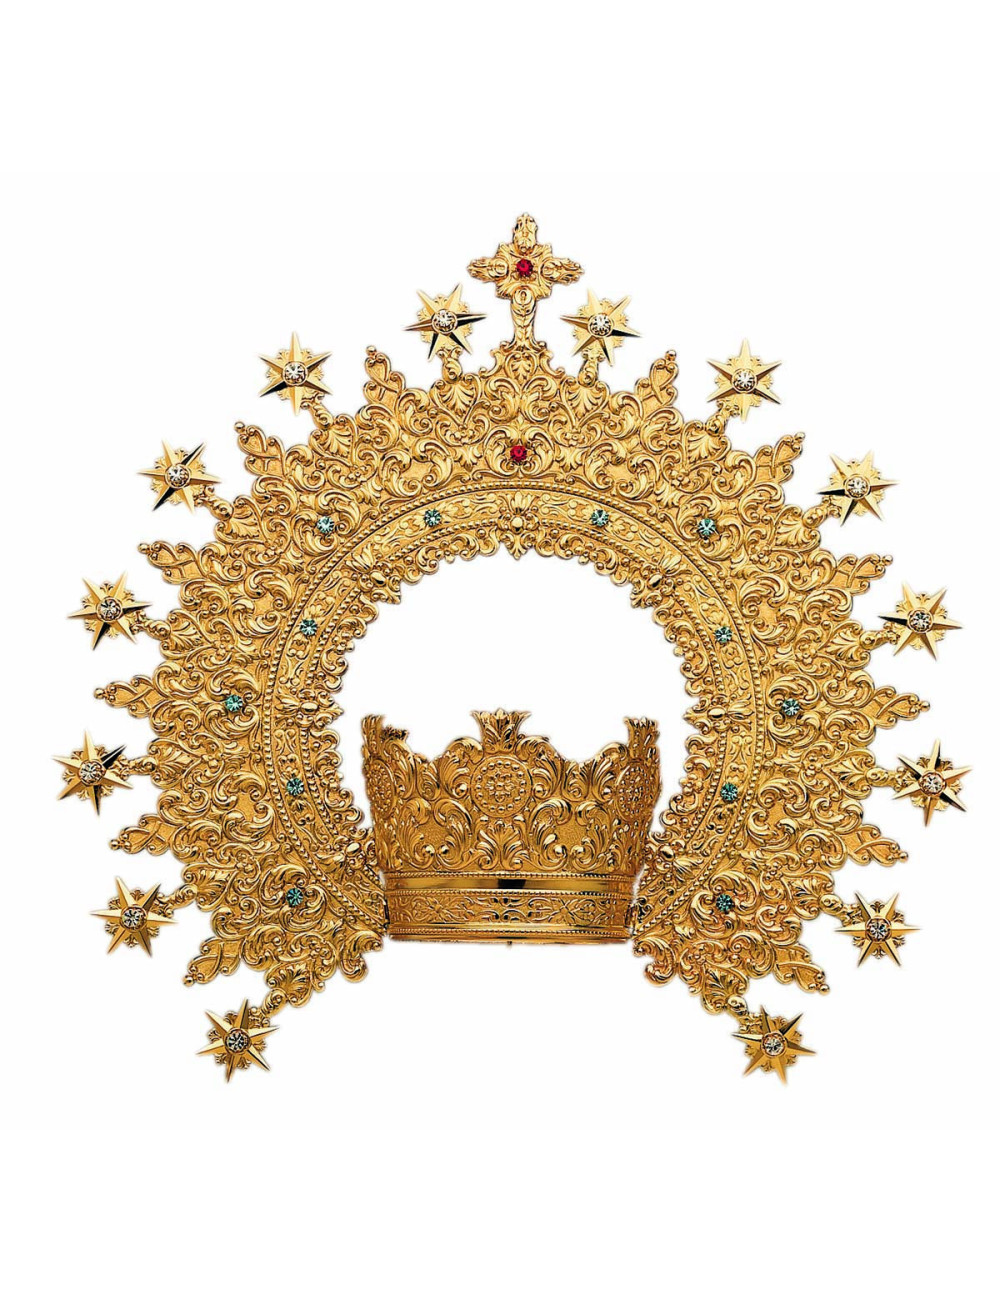 Corona sin Imperial metal o plata y piedras